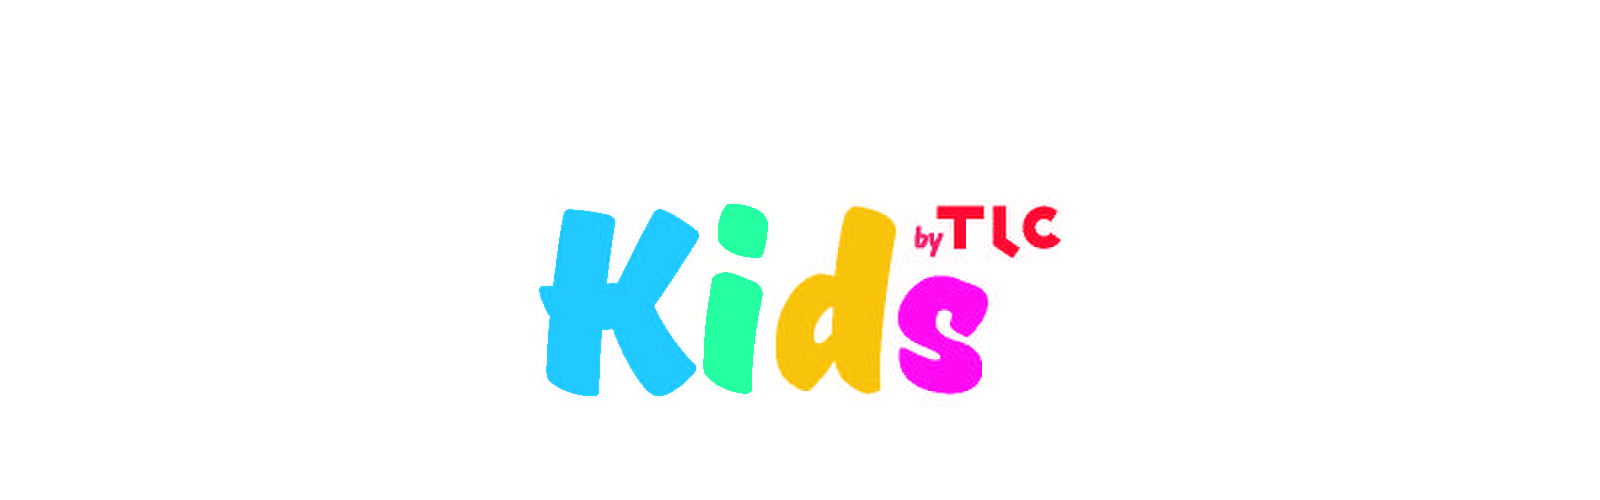 Logo TLC Kids, s.r.o.